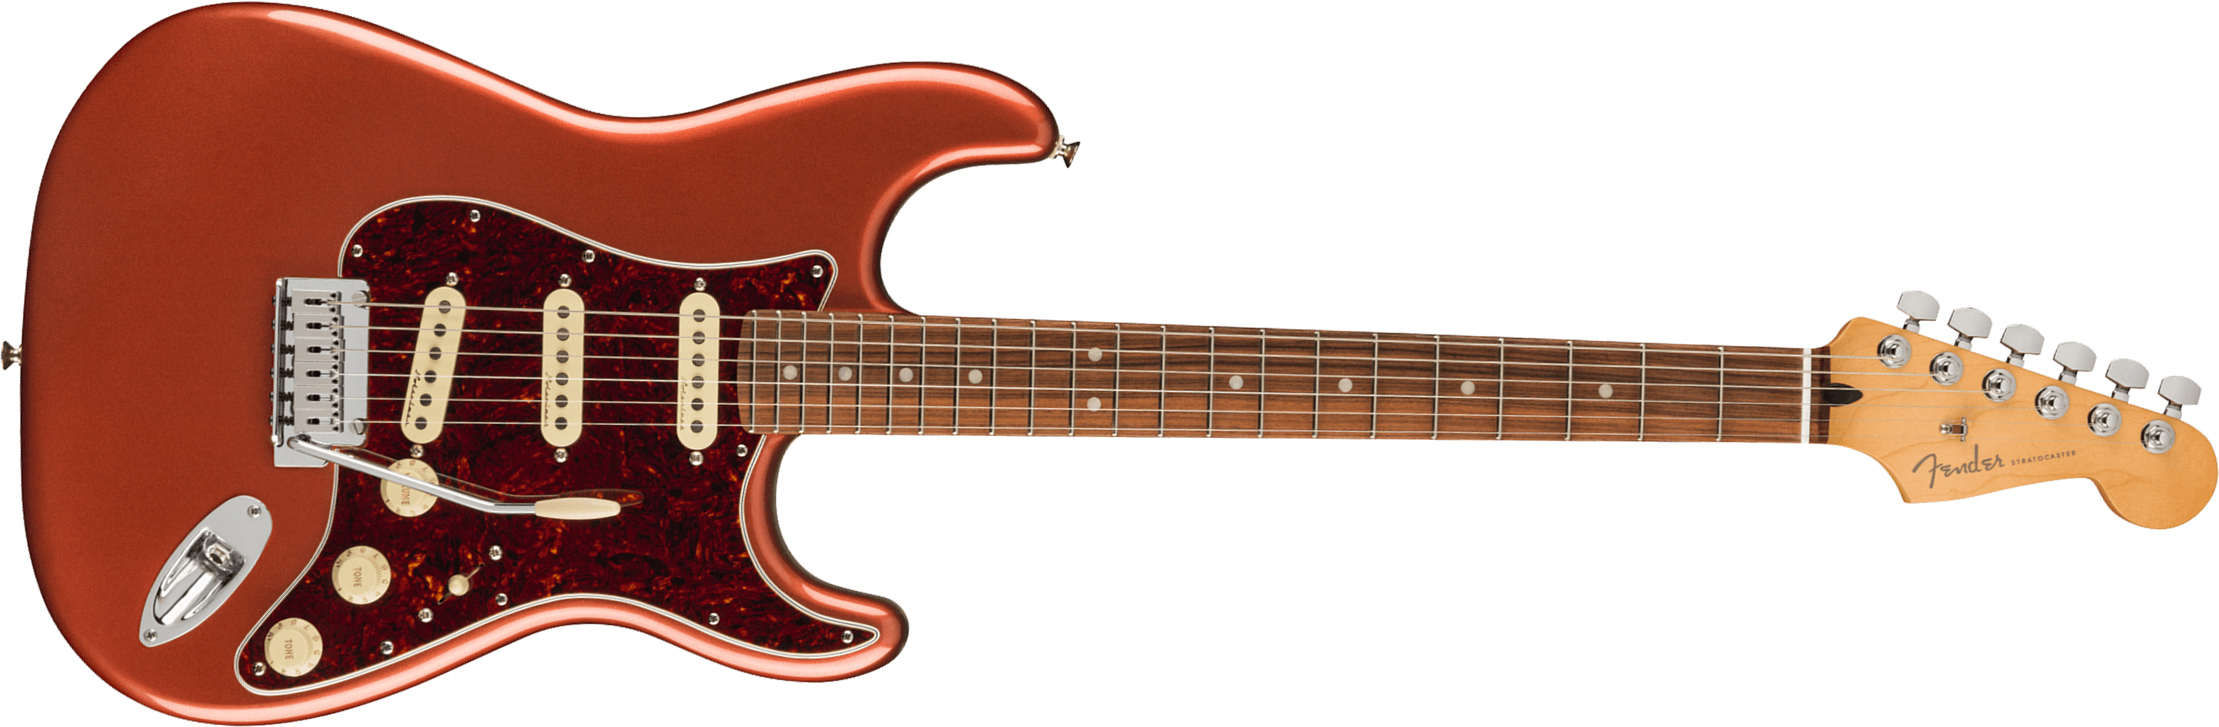 Fender Strat Player Plus Mex 3s Trem Pf - Aged Candy Apple Red - Elektrische gitaar in Str-vorm - Main picture